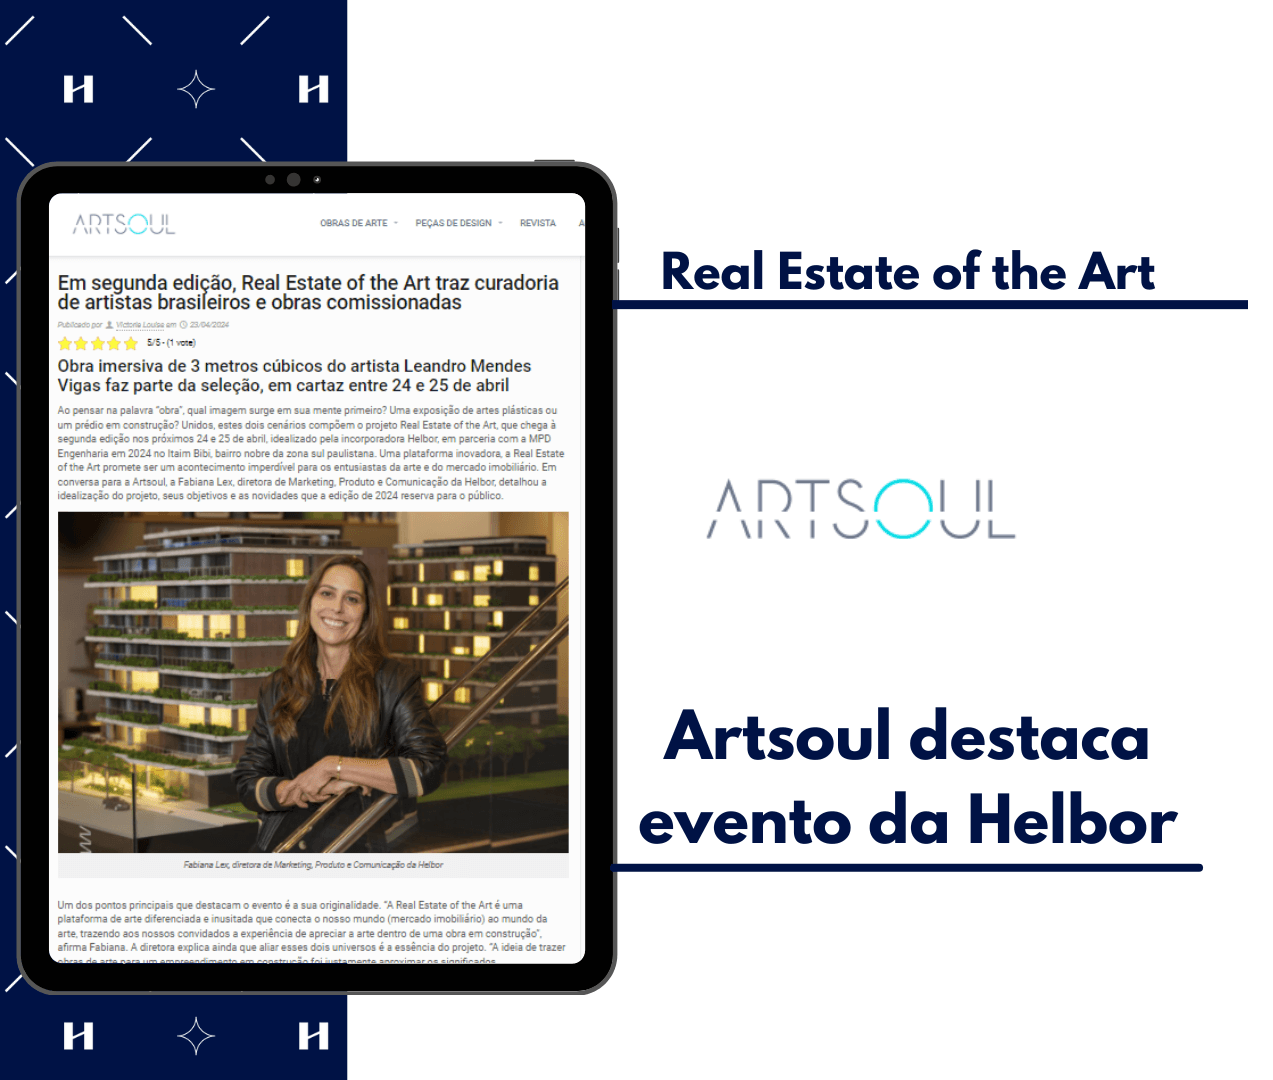 Artsoul traz evento da Helbor no destaque 